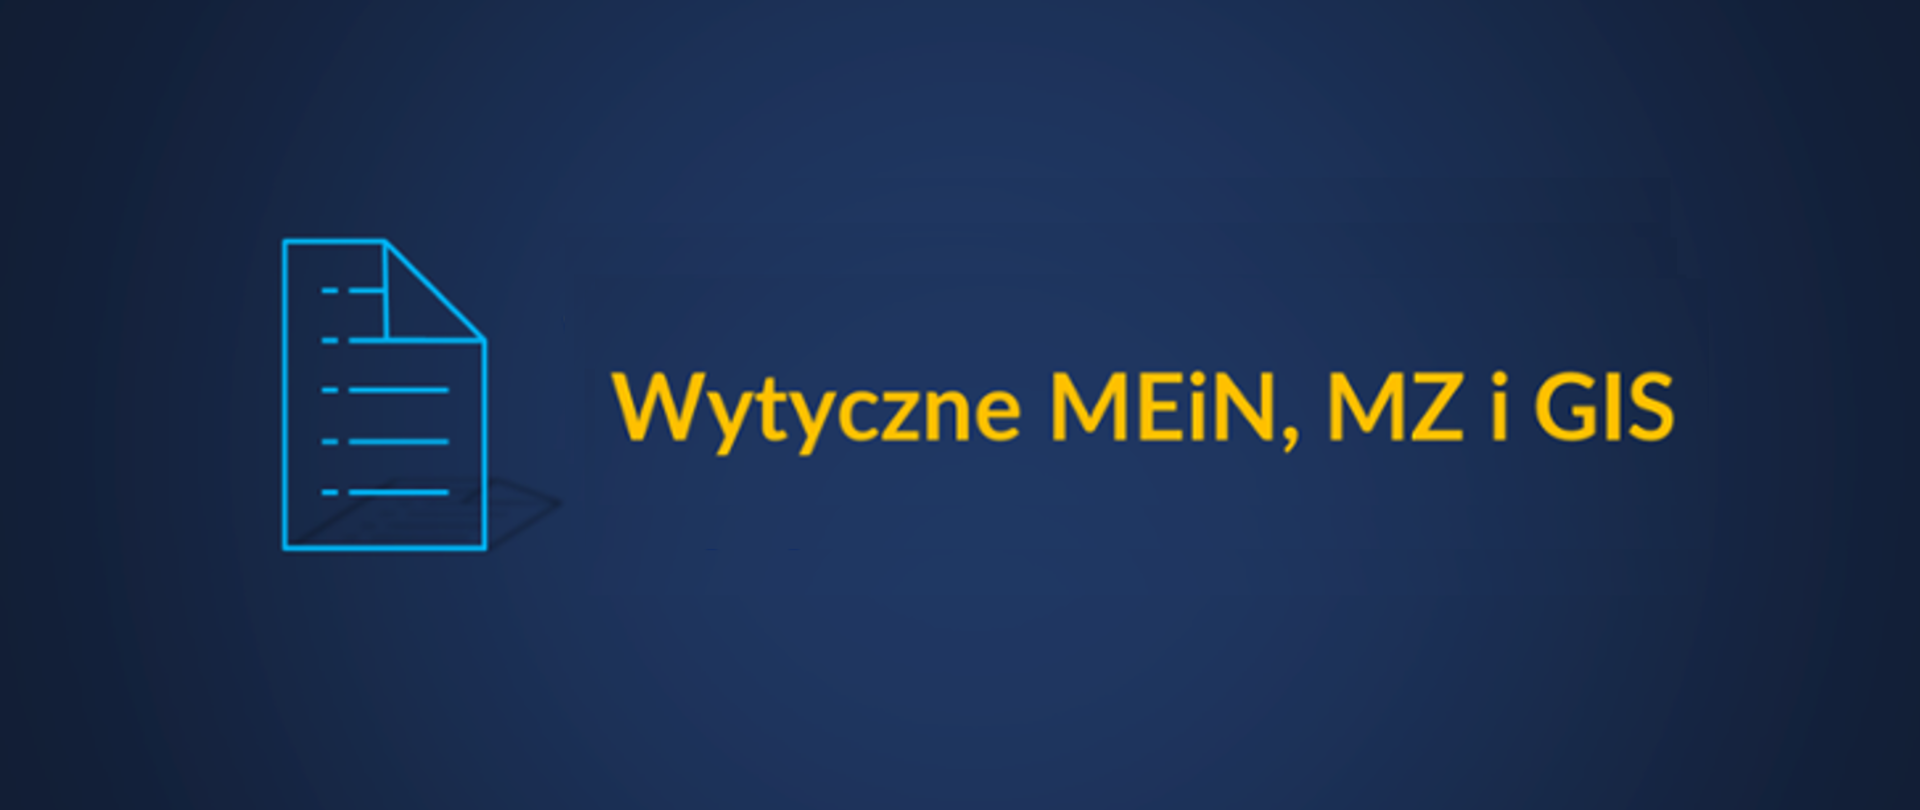 Ciemnogranatowy baner. Z lewej grafika niebieskiej kartki zeszytu, z prawej żółty napis - Wytyczne MEiN, MZ i GIS.